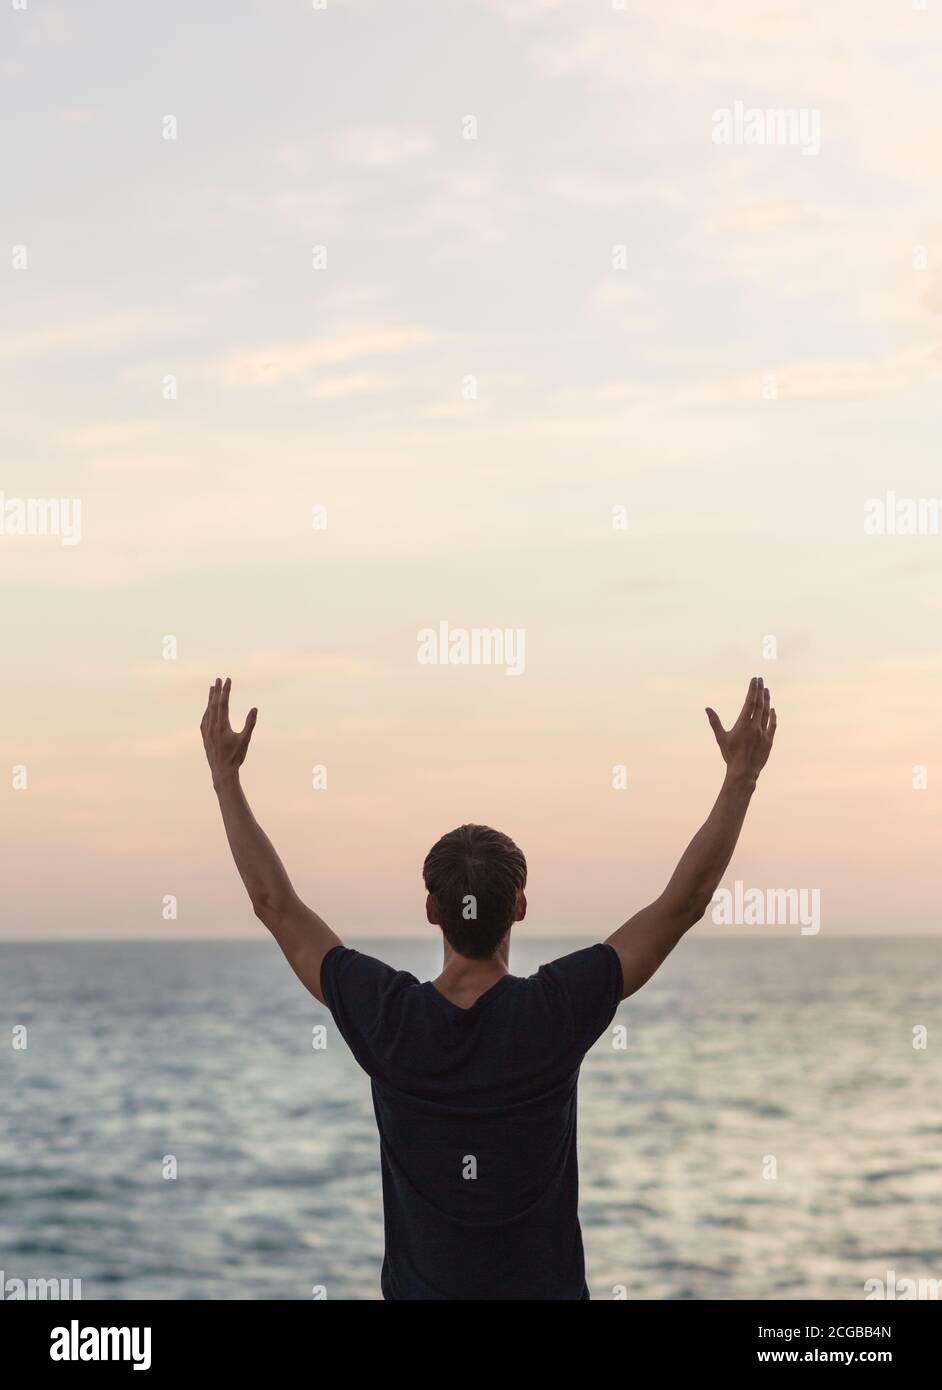 Gesunder junger Mann mit den Armen nach oben zum Himmel, der während eines wunderschönen Sonnenuntergangs mit Blick auf den Ozean feiert. Wohlbefinden und Freiheit. Stockfoto